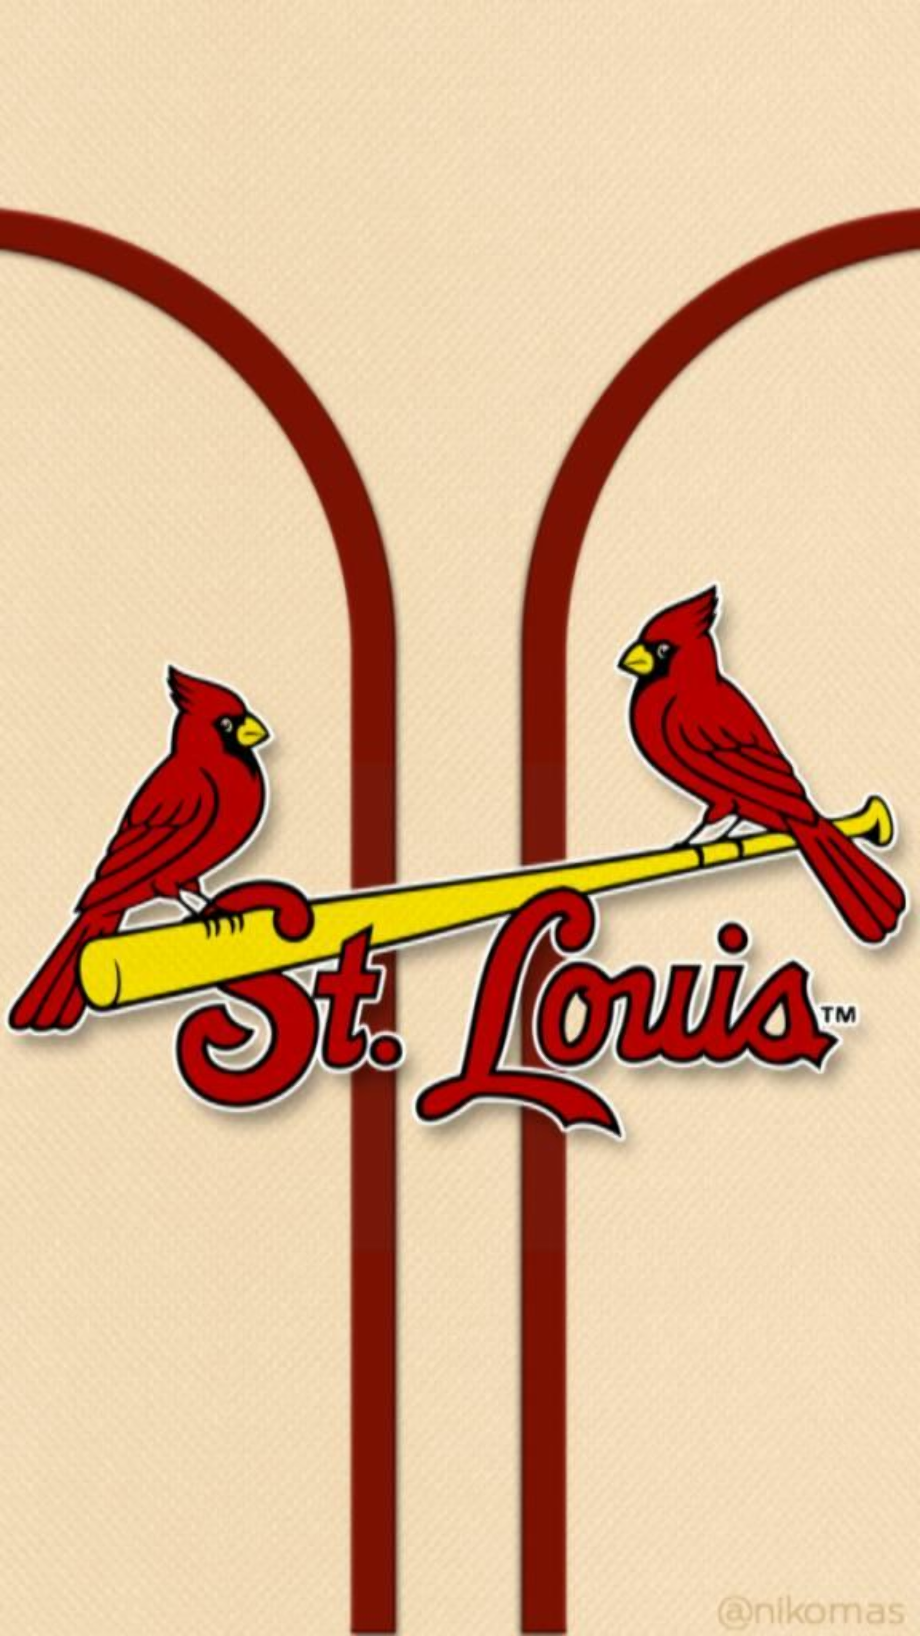 st louis cardinals logo iphone 7